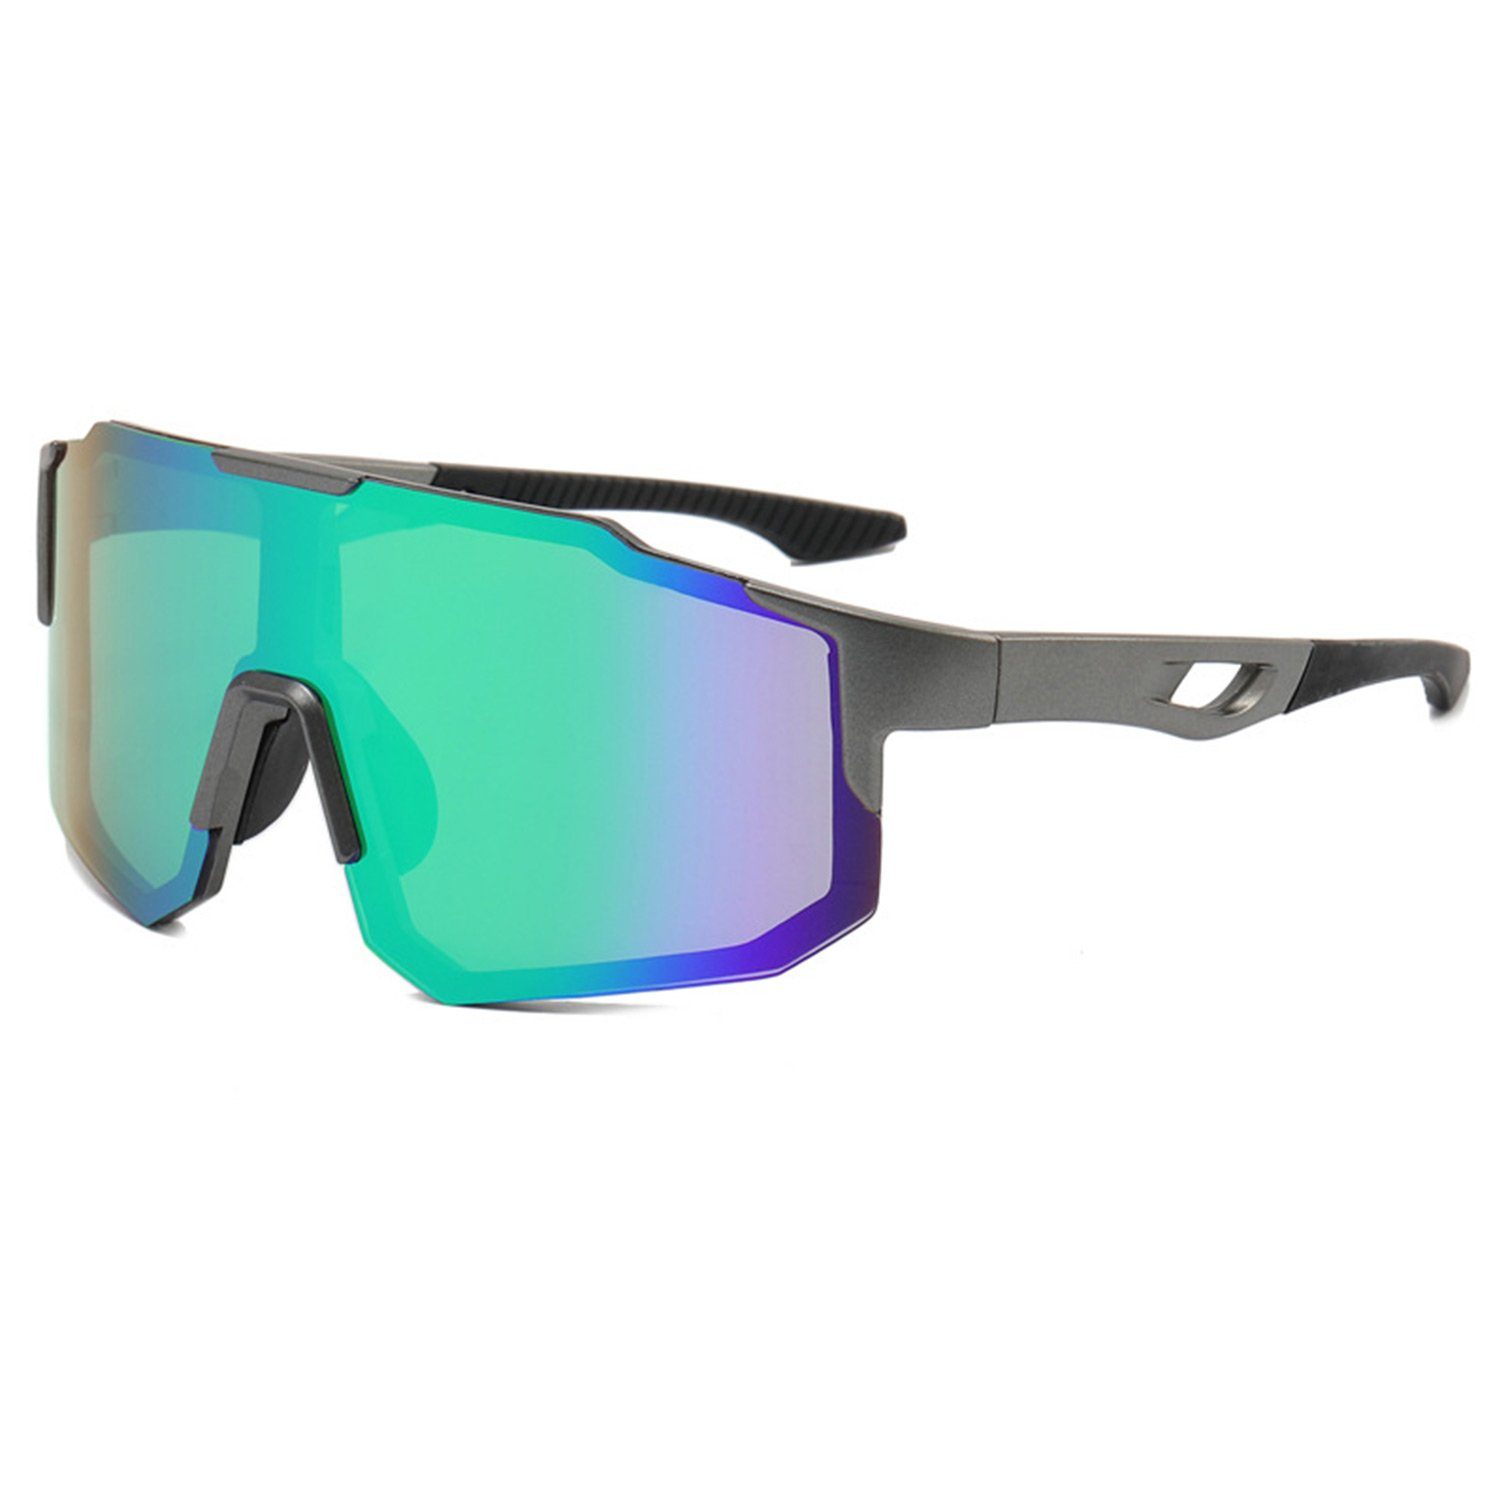 MAGICSHE Fahrradbrille Fahrradbrillen für Herren und Damen, Sport-Sonnenbrillen, Windschutzscheibe, UV-beständige und klare Sicht Brille Gewehrrahmen grüne Folie